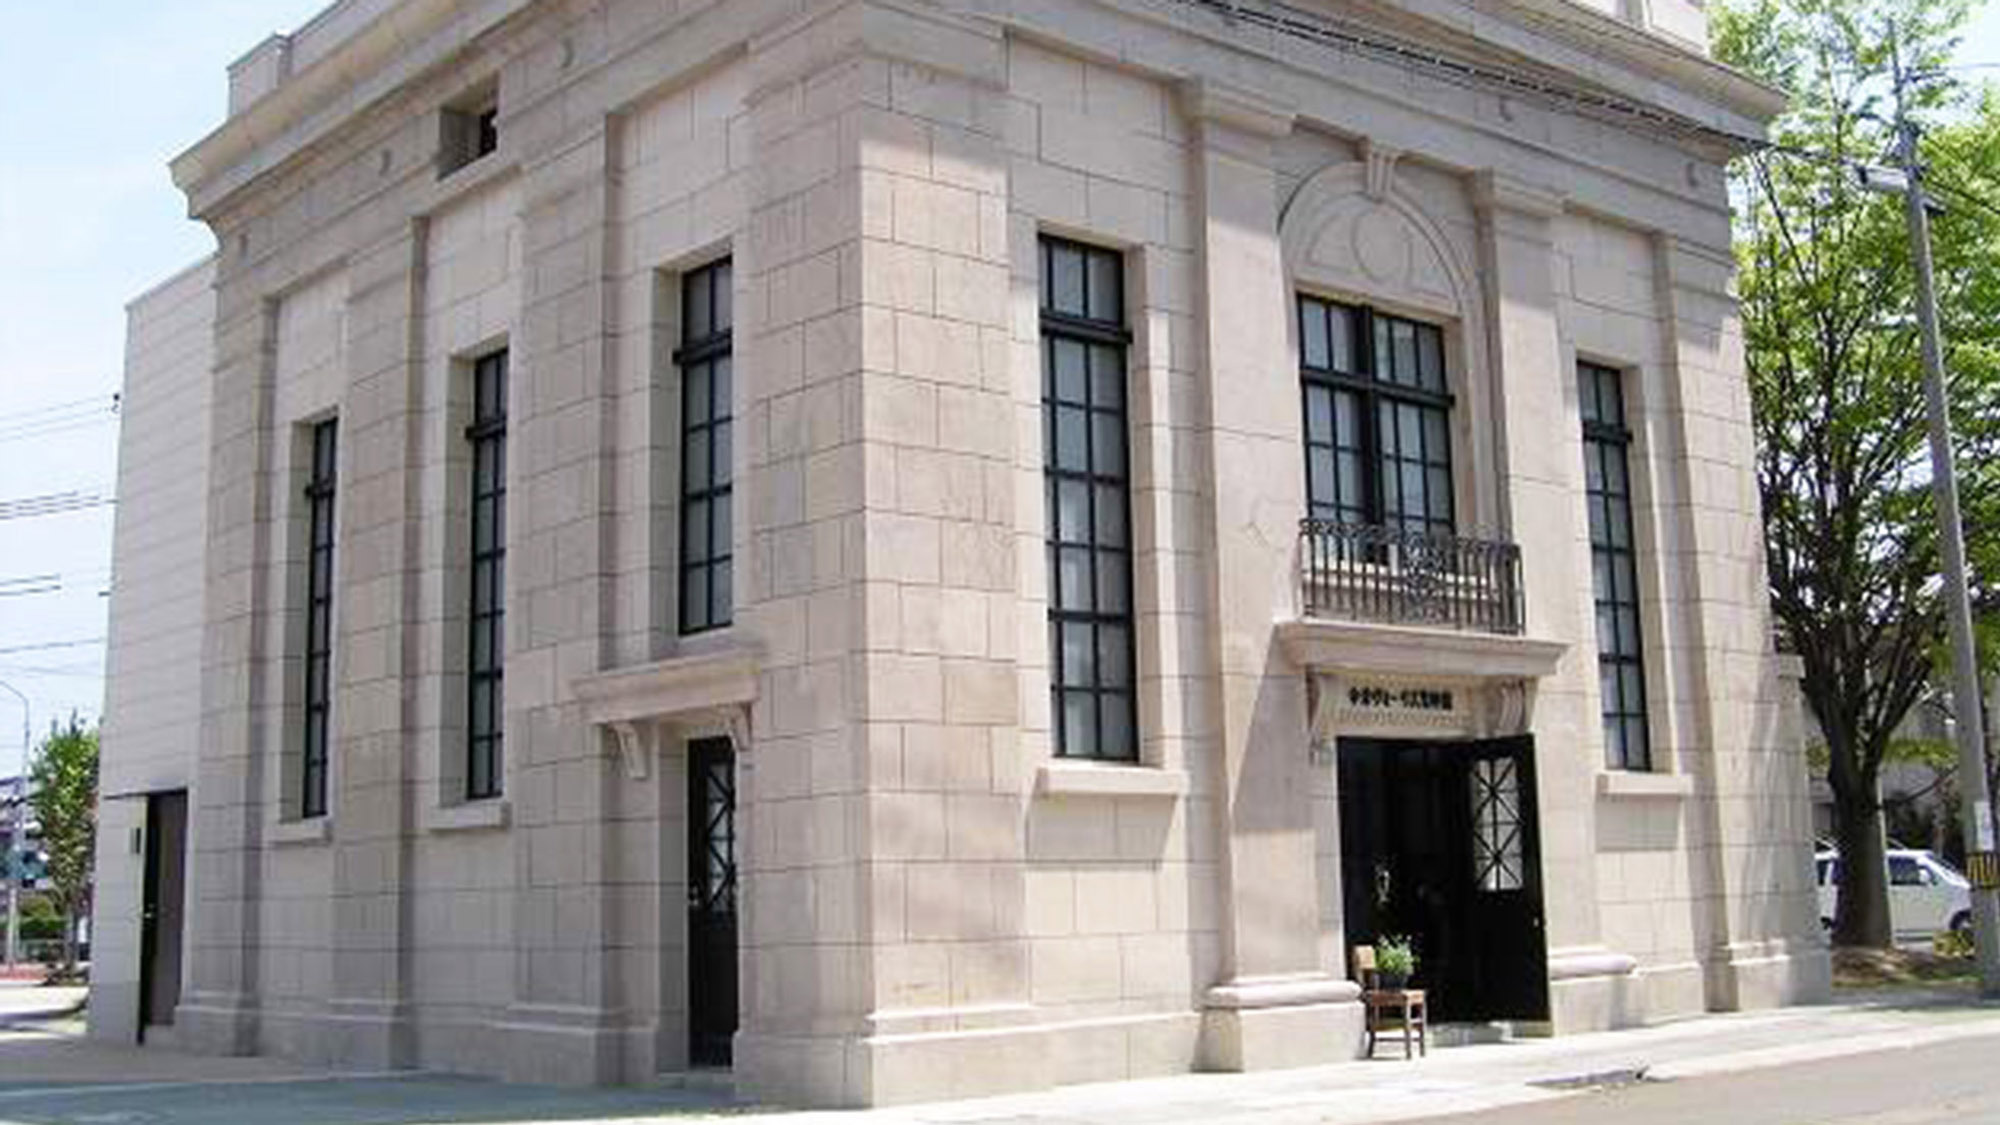 ・今津ヴォーリーズ資料館平成15年に国の登録有形文化財に指定された貴重な建築物です